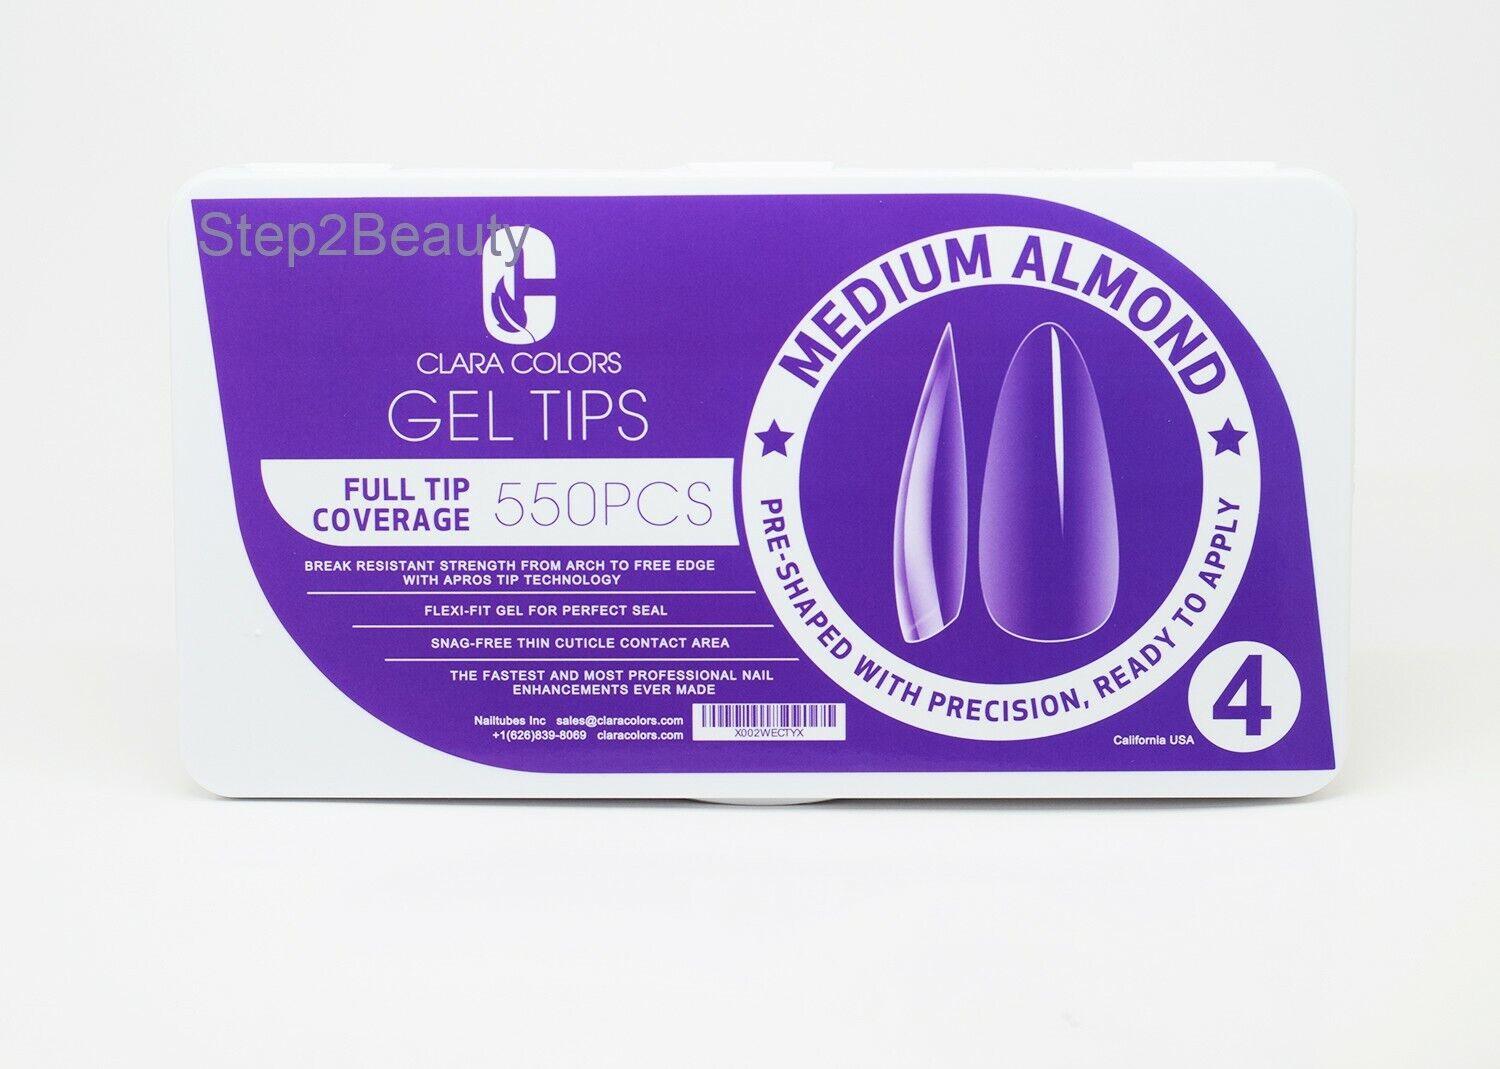 Clara Colors - Full Tip Coverage 550 pcs - Medium Almond Gel Tips #4